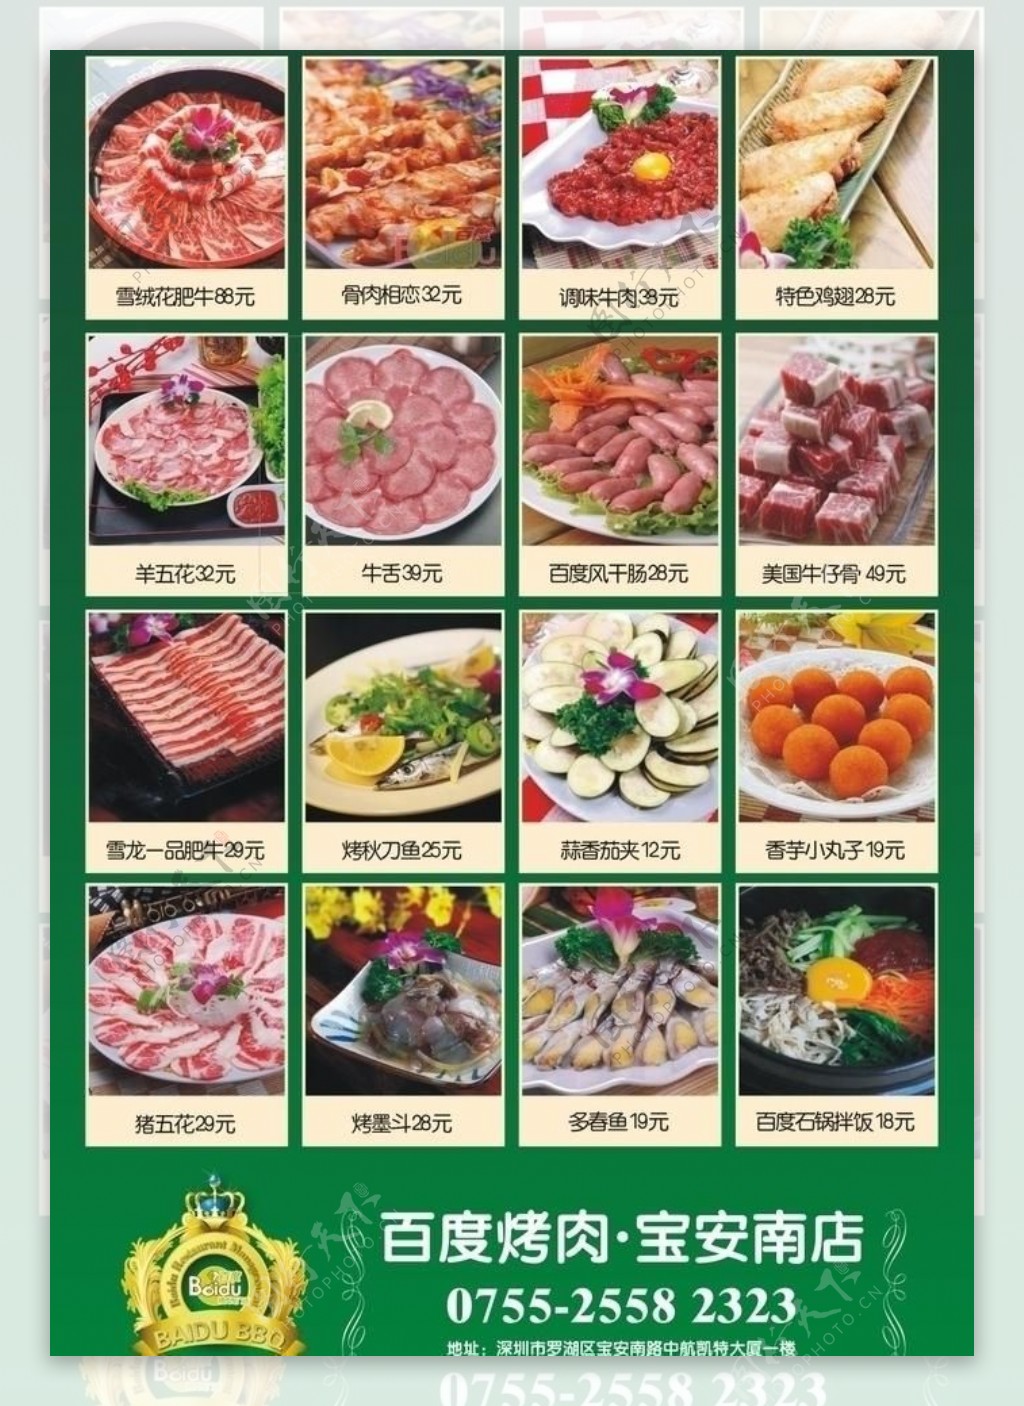 烤羊肉串买哪个部位的肉 - 业百科